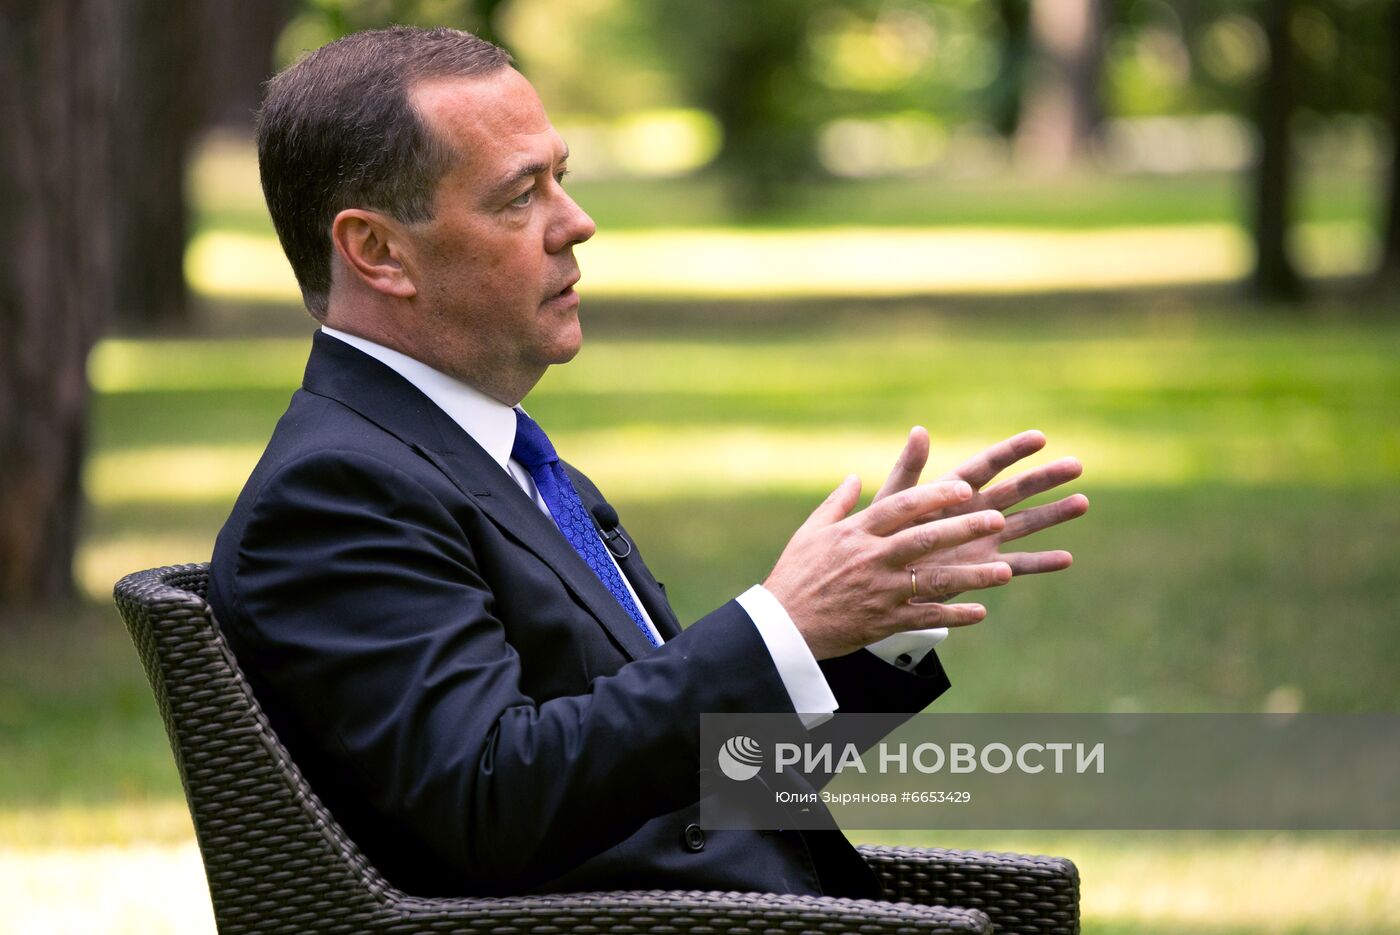 Зампред Совбеза РФ Д. Медведев дал интервью телекомпании Deutsche Welle